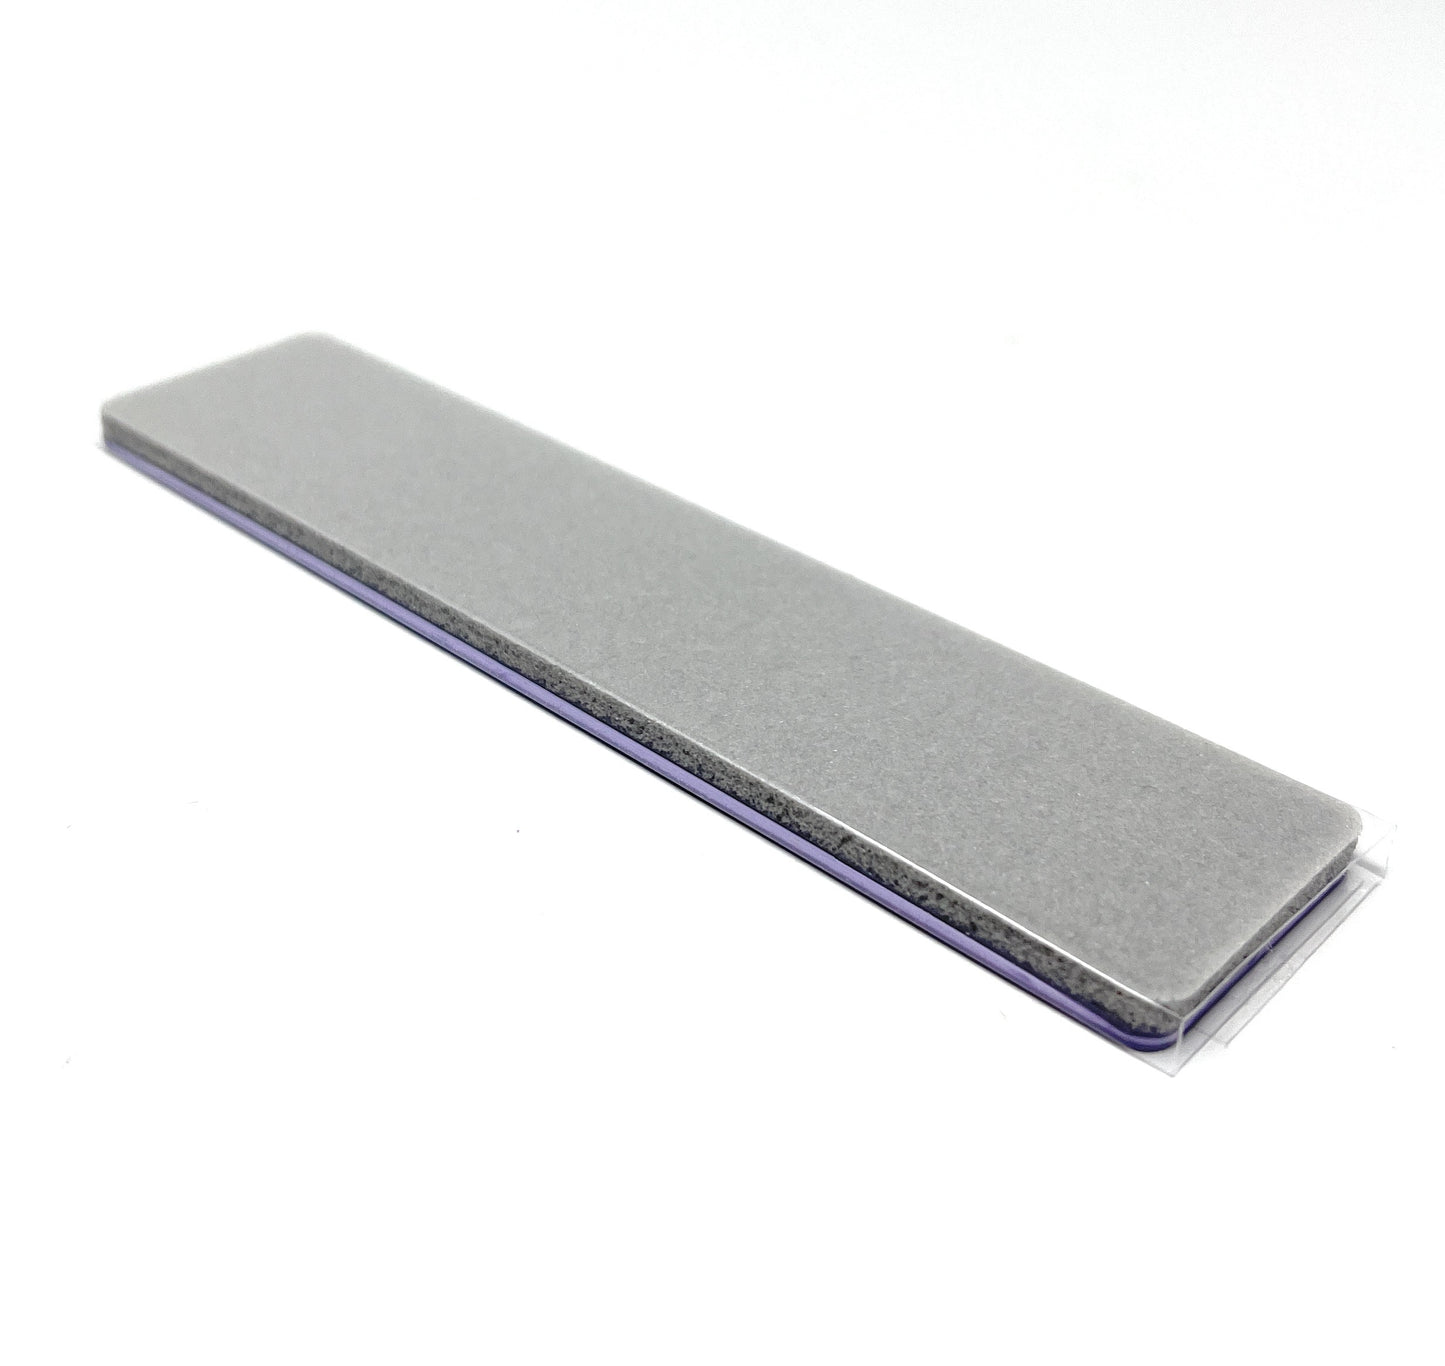 Tropical Shine Purple 180 Grit Antibacterial Nail Files Hard Shell & Soft Sponge Nail Supplies Nail Filer  3 Pcs.